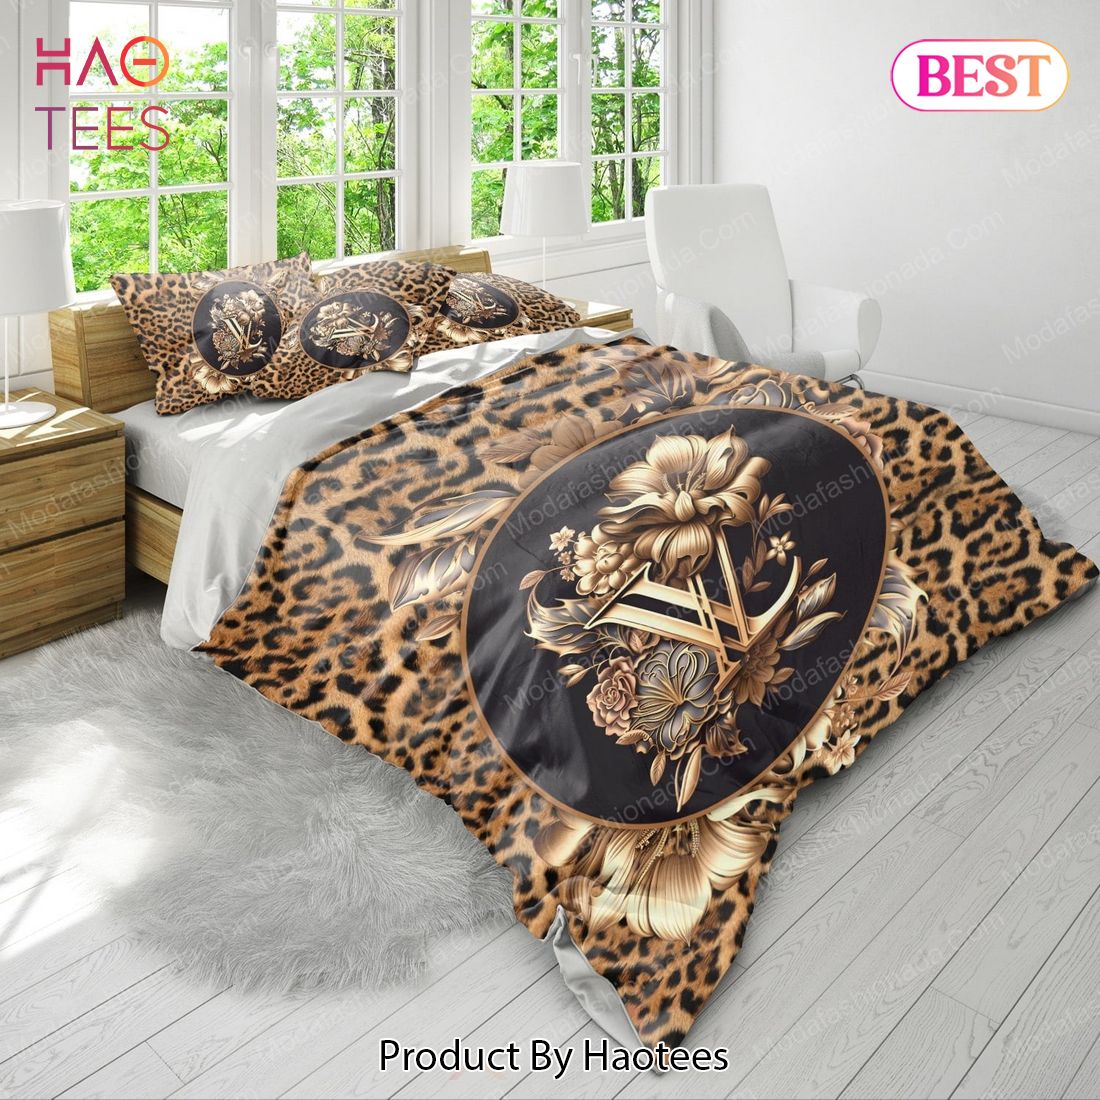 Buy Leopard Head Louis Vuitton Bedding Sets Bed Sets, Bedroom Sets, Comforter  Sets, Duvet Cover, Bedspread